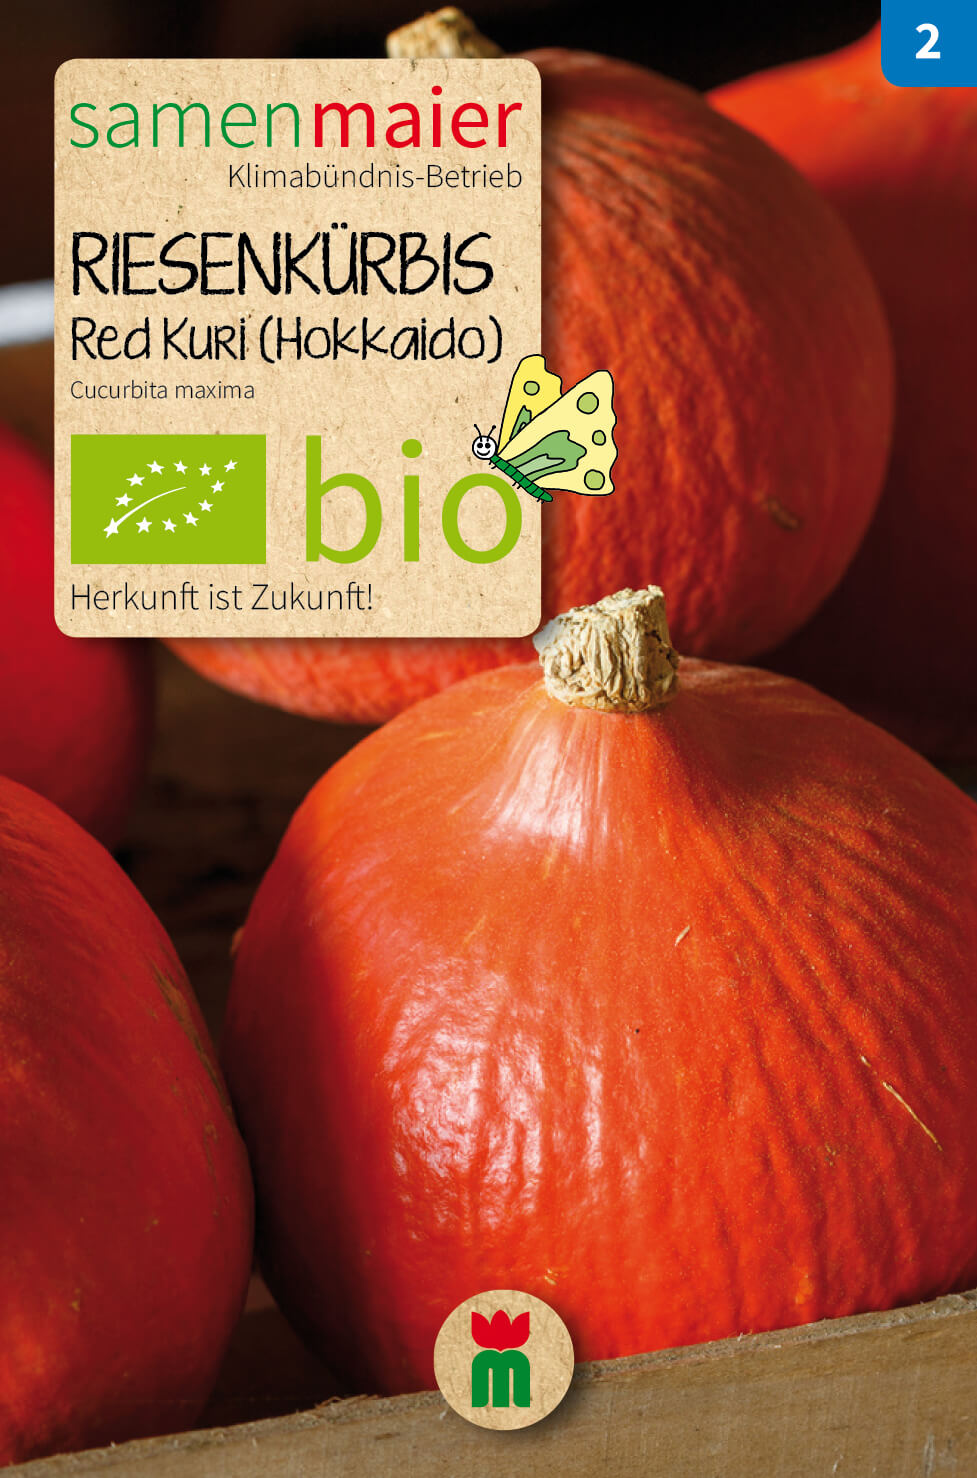 Beet-Box "Alles Gute zum Geburtstag" | BIO Gemüsesamen-Sets von Samen Maier